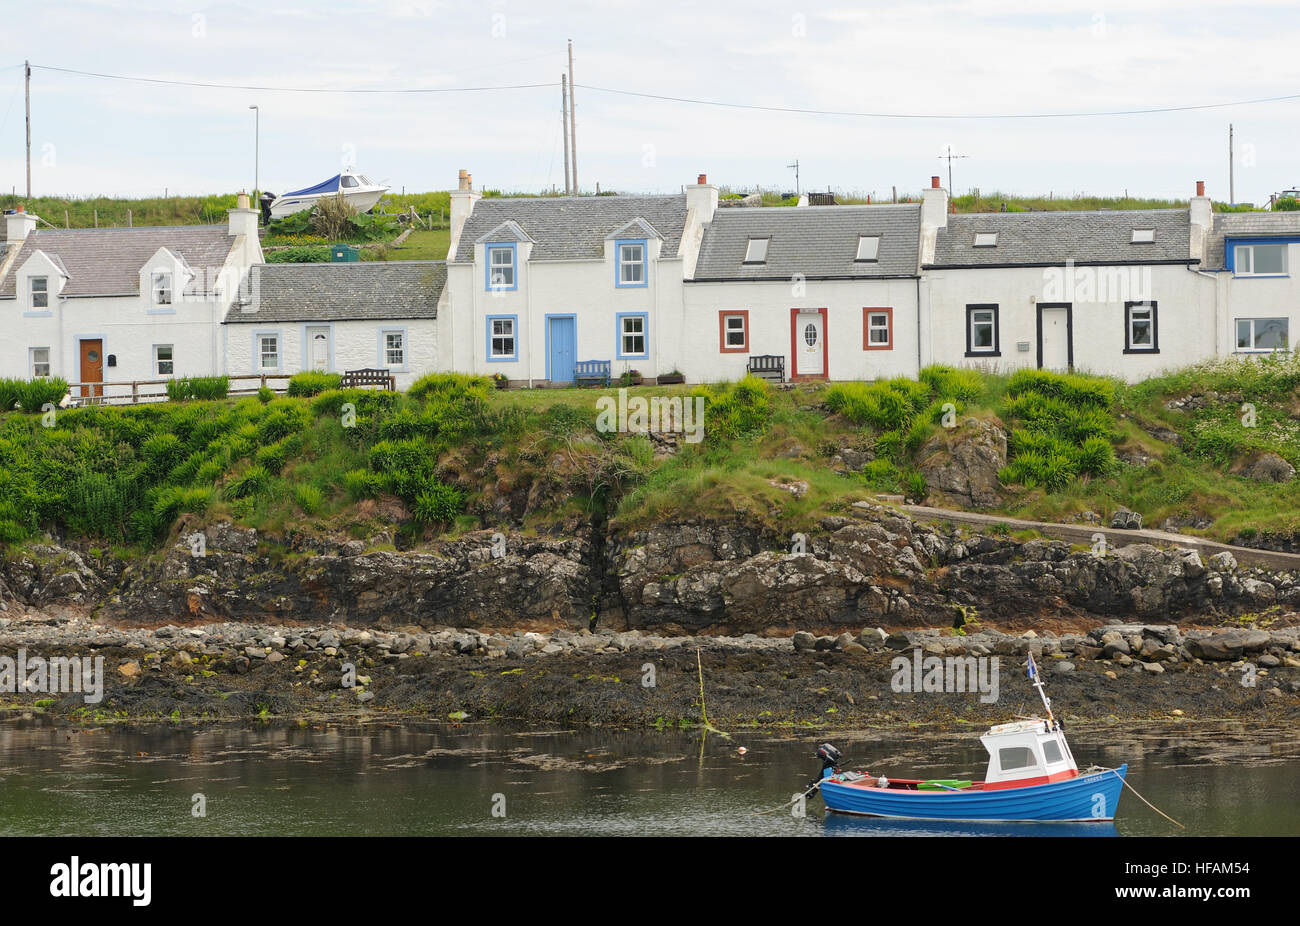 Eine Reihe von bemalten Häuschen am Rande der geschützten Hafen bei portnahaven. Portnahaven, Islay, Innere Hebriden, Argyll, Schottland, Großbritannien. Stockfoto